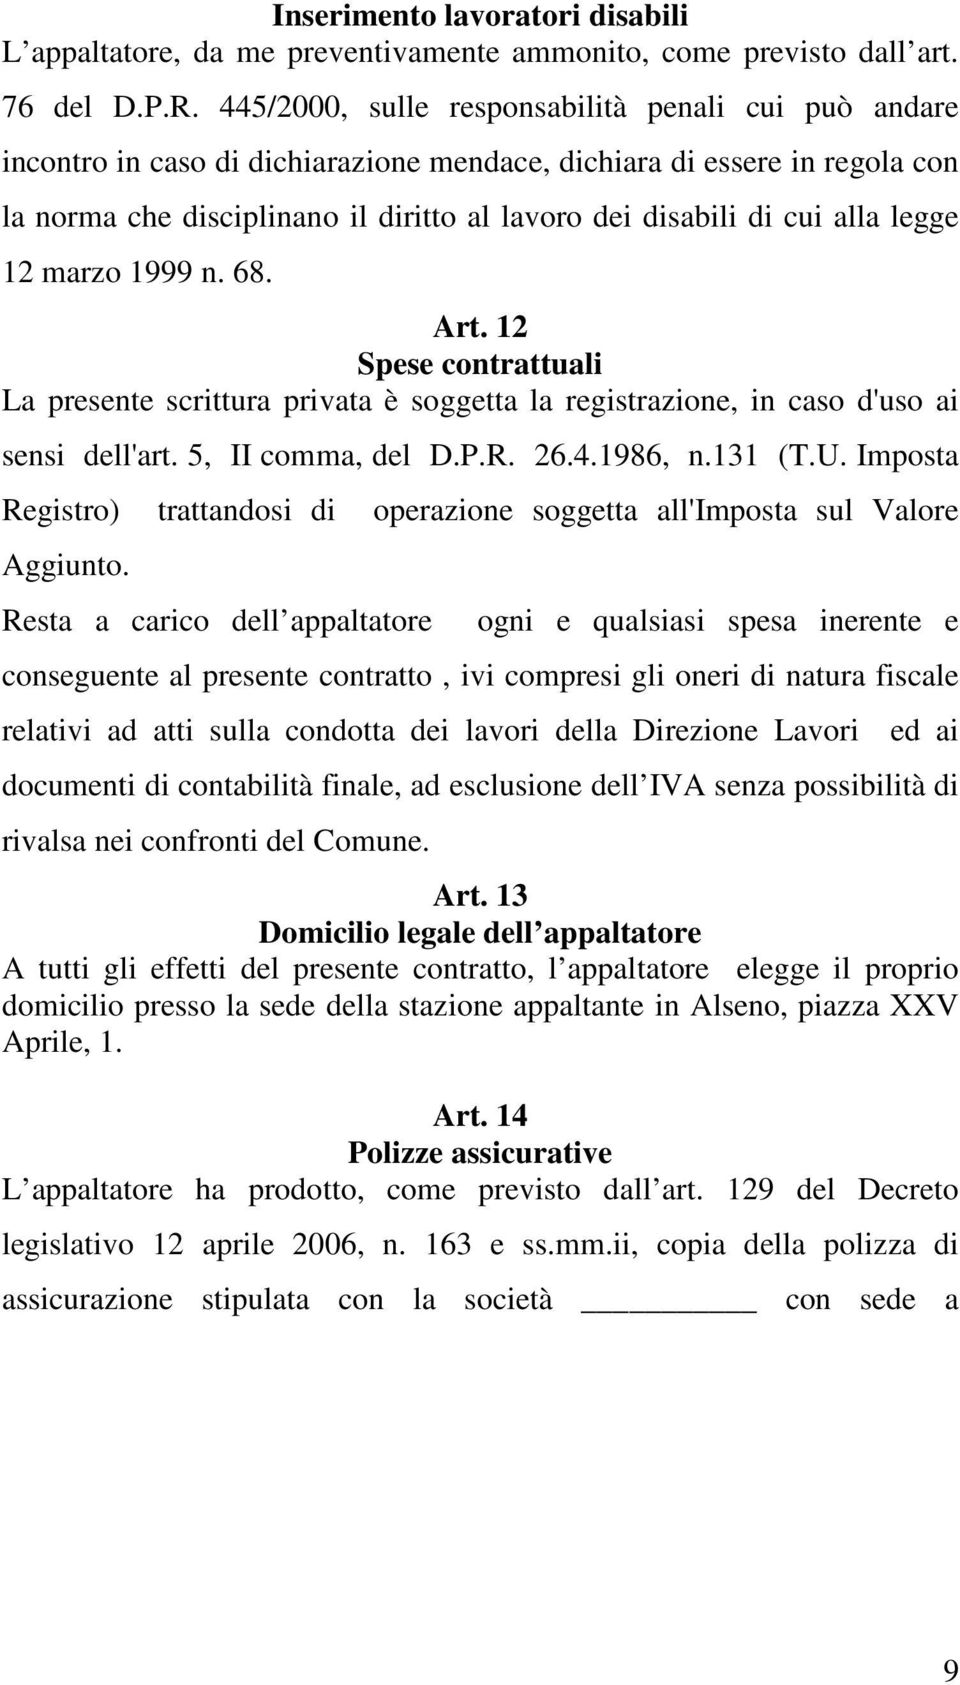 alla legge 12 marzo 1999 n. 68. Art. 12 Spese contrattuali La presente scrittura privata è soggetta la registrazione, in caso d'uso ai sensi dell'art. 5, II comma, del D.P.R. 26.4.1986, n.131 (T.U.